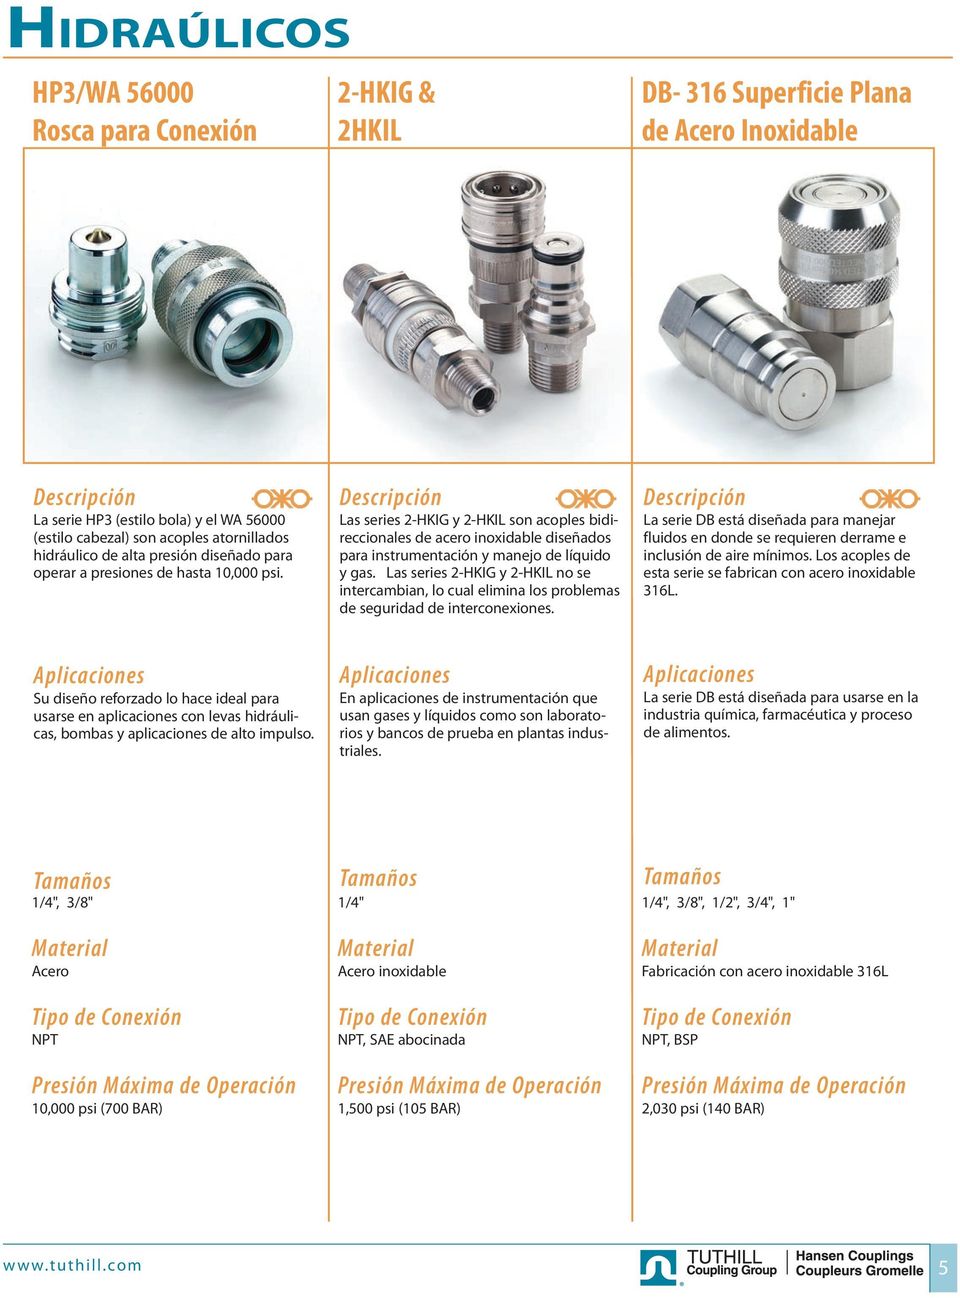 Las series 2-HKIG y 2-HKIL son acoples bidireccionales de acero inoxidable diseñados para instrumentación y manejo de líquido y gas.